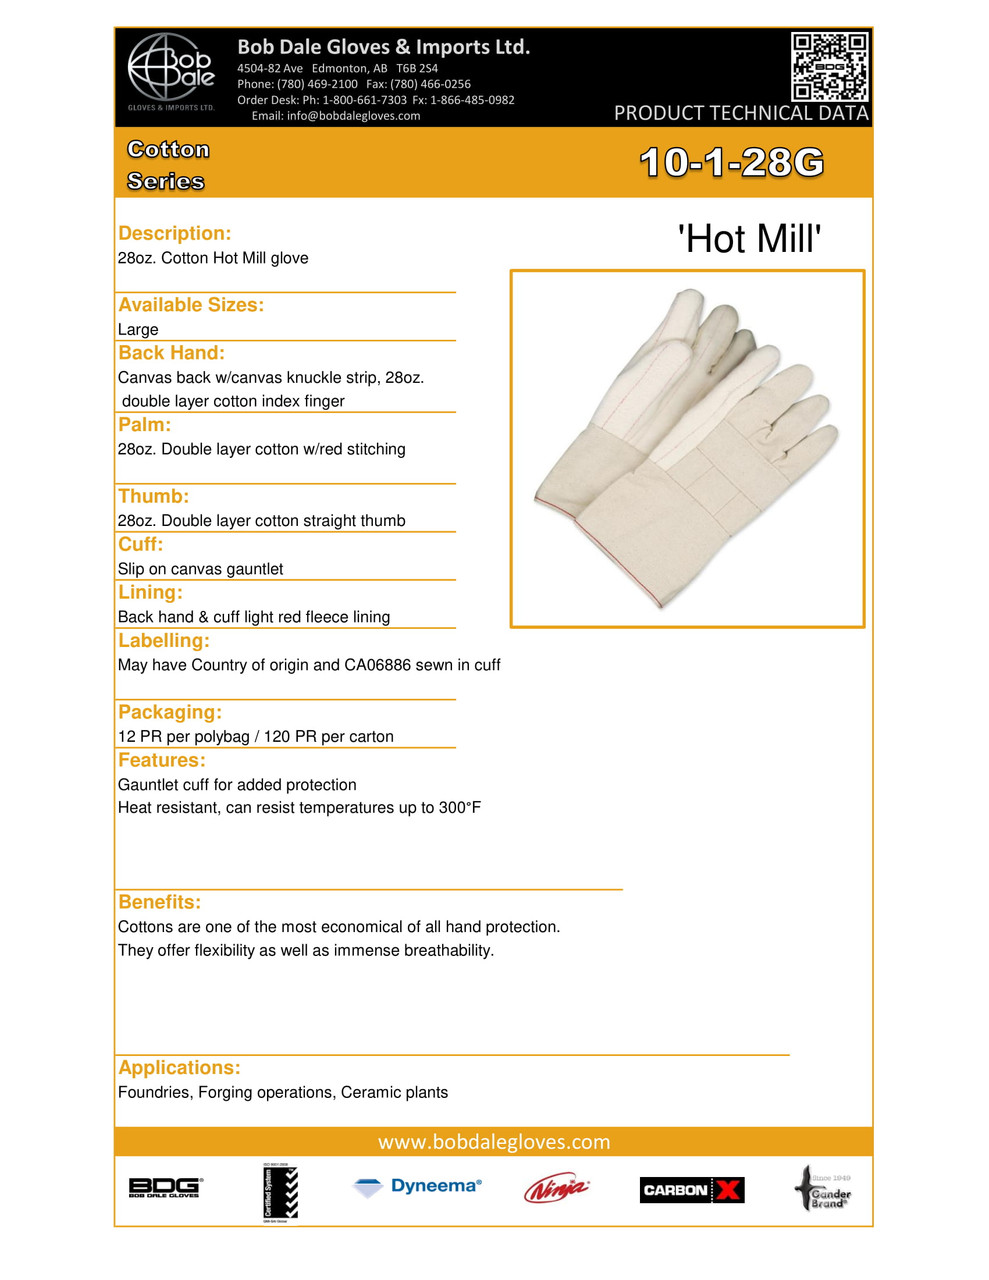 Hot Mill Cotton Glove w/Canvas Backhand & Gauntlet Cuff  10-1-28G